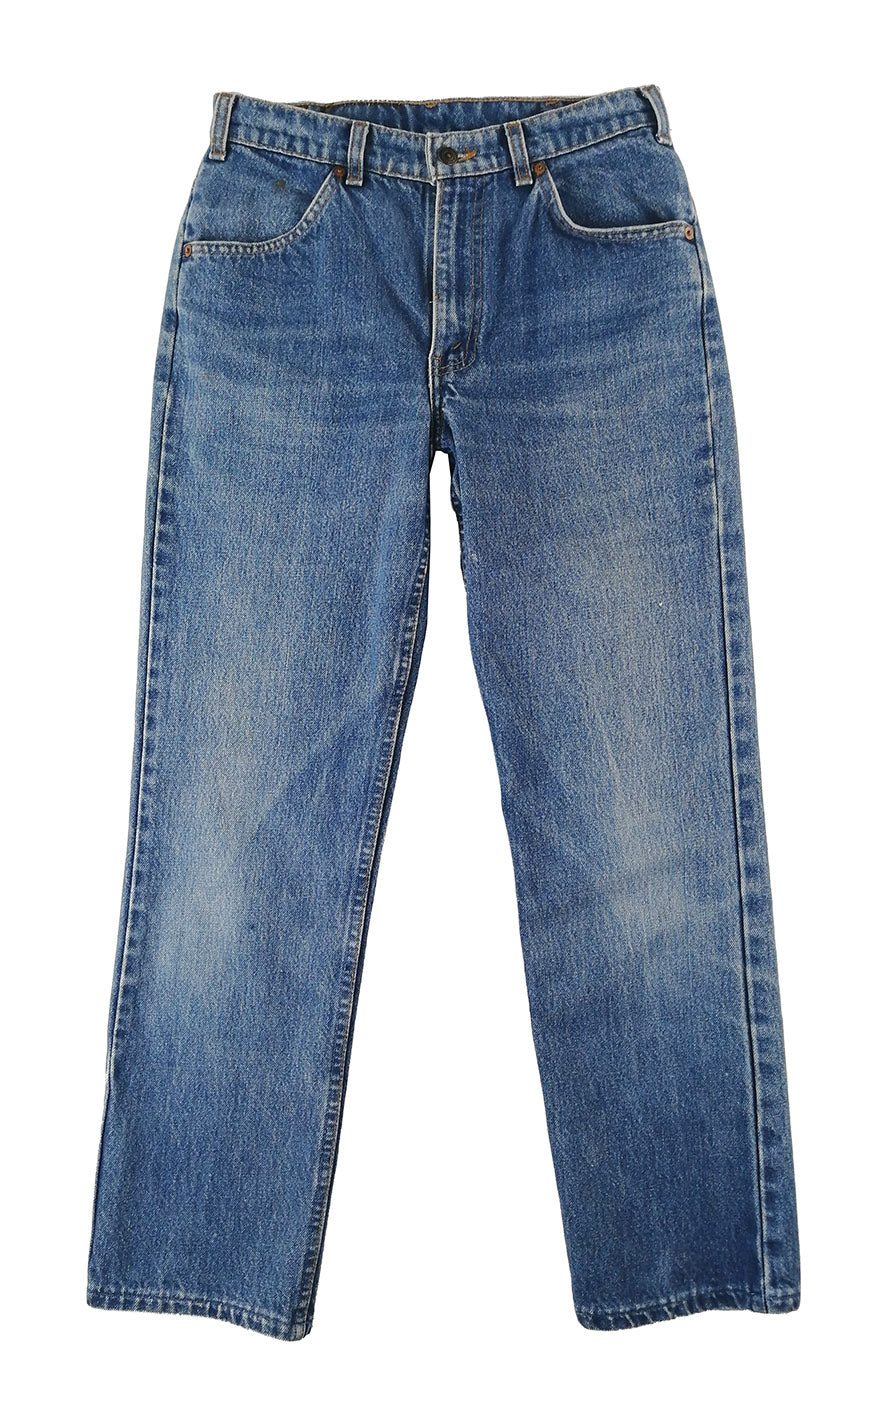 Vintage Levi's 619 Orange Tab Jeans